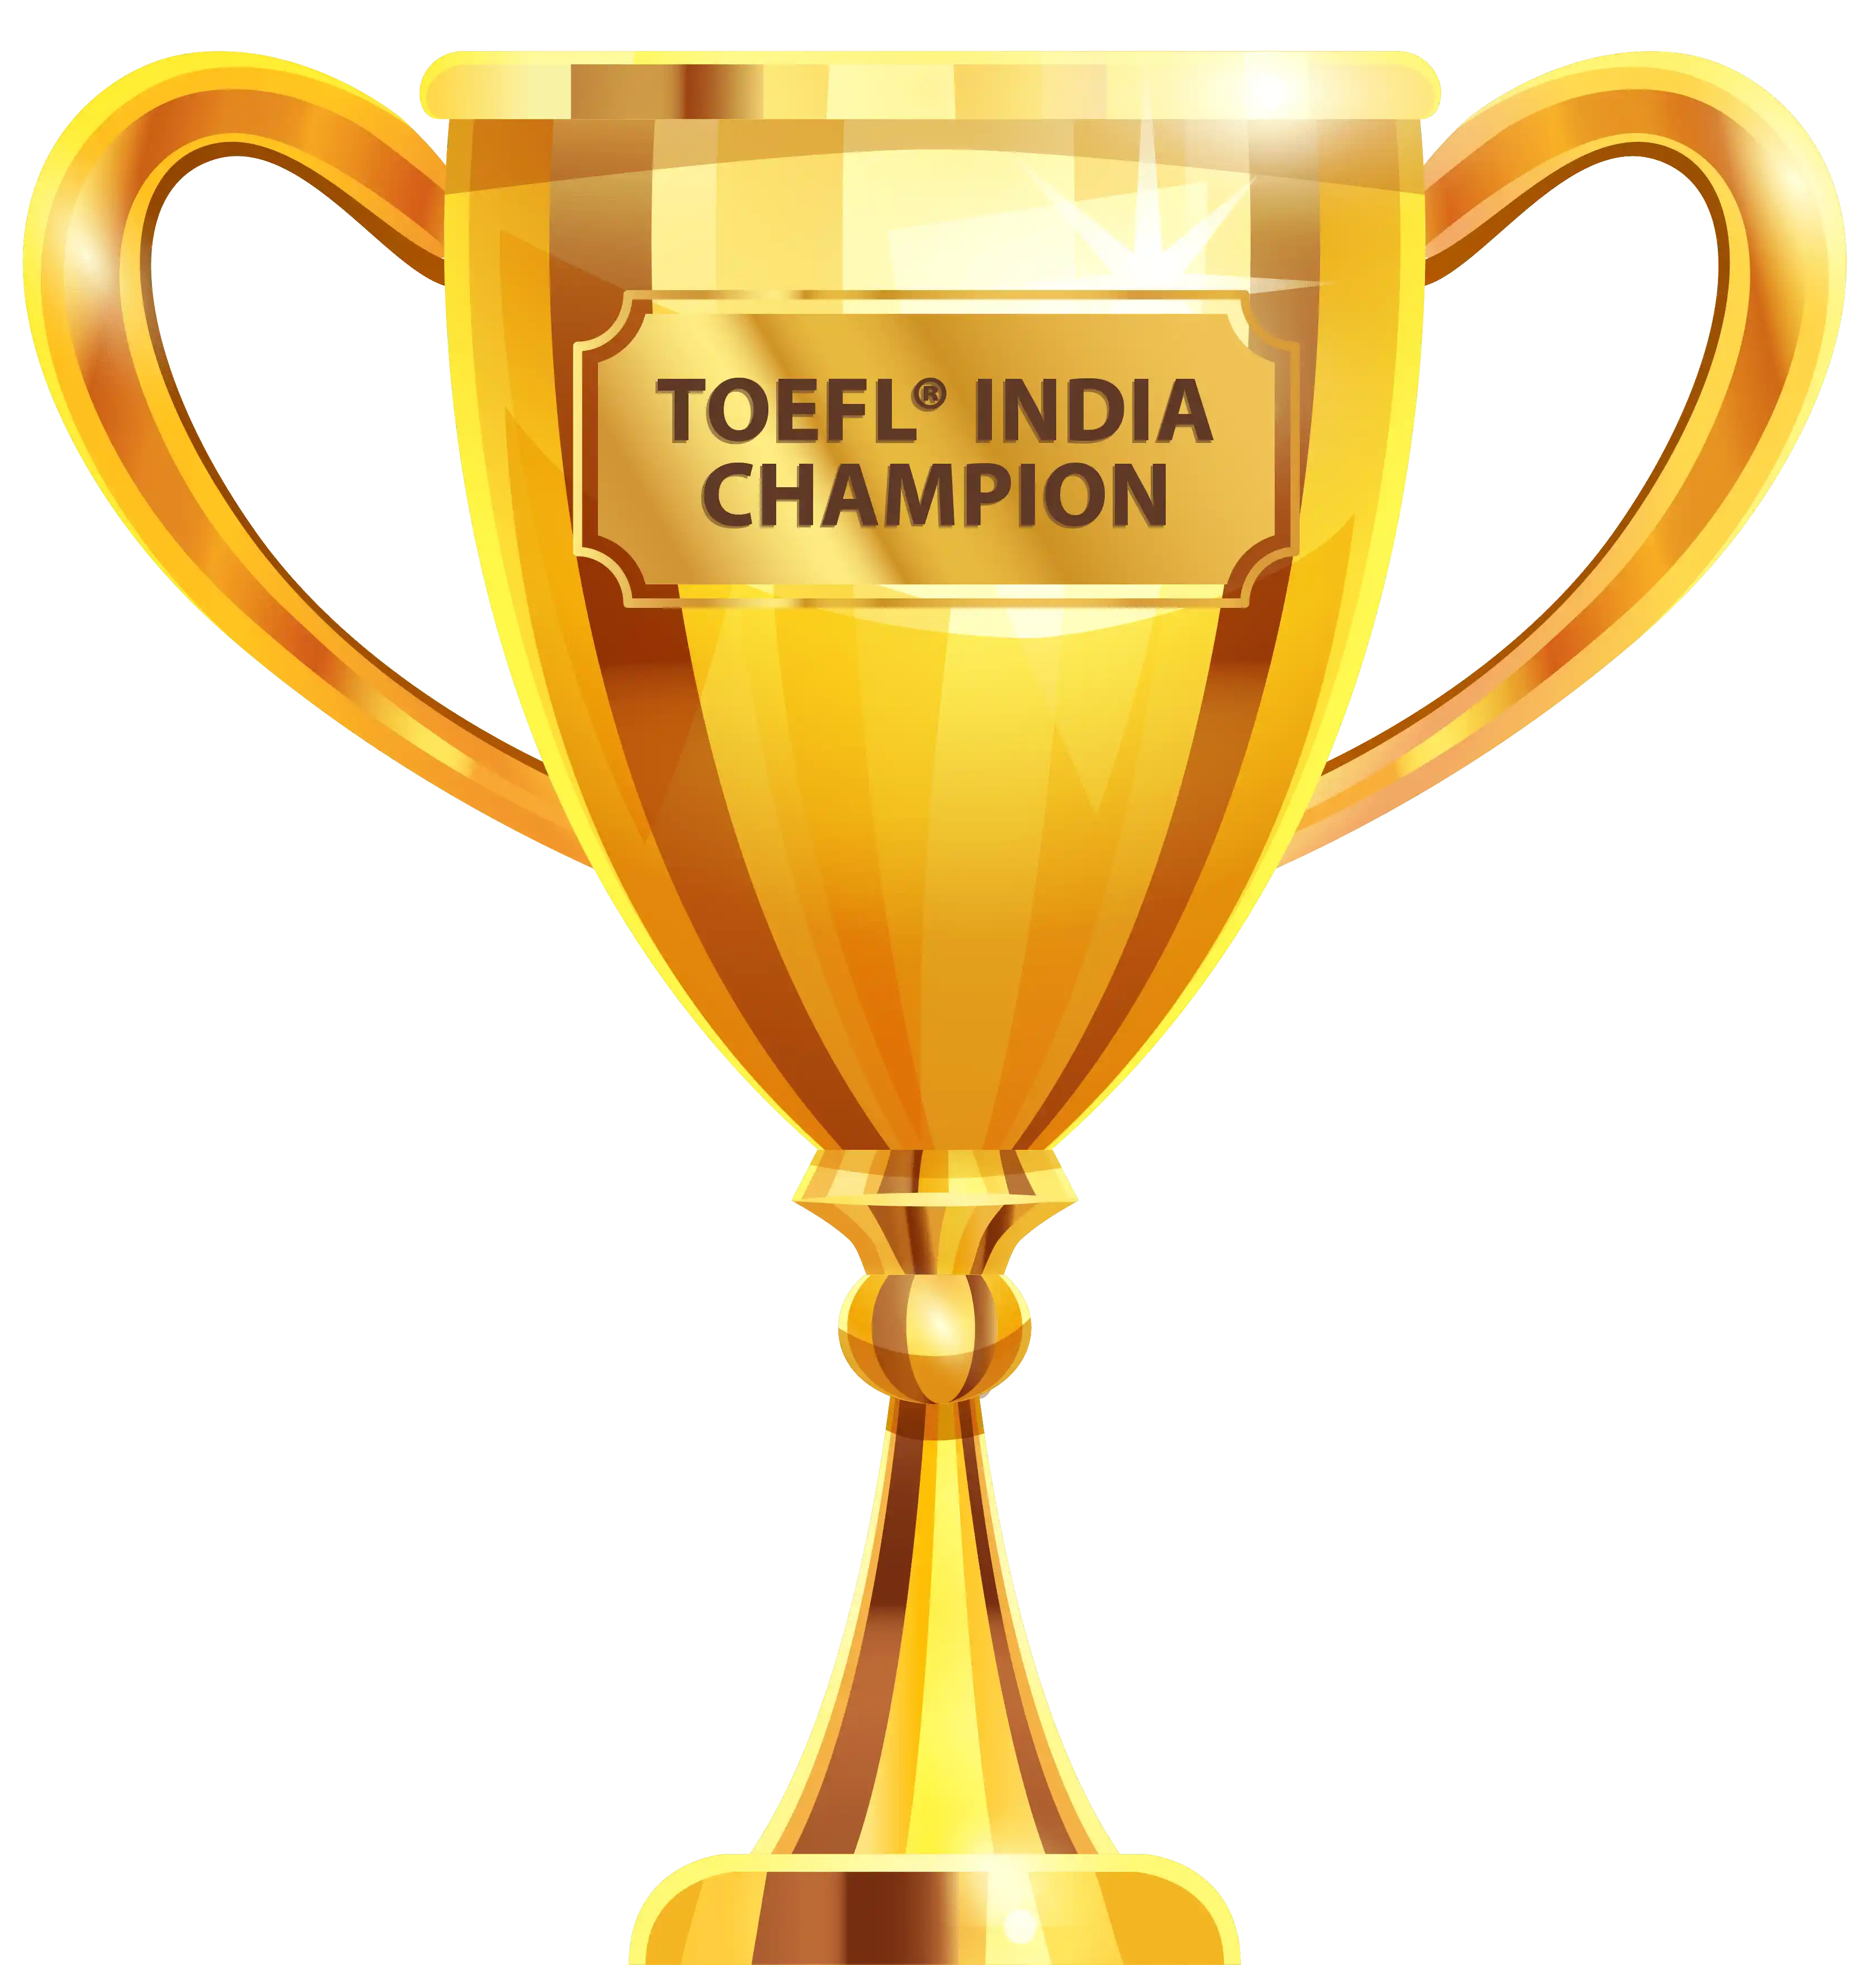 TOEFL India Championship - Round 1